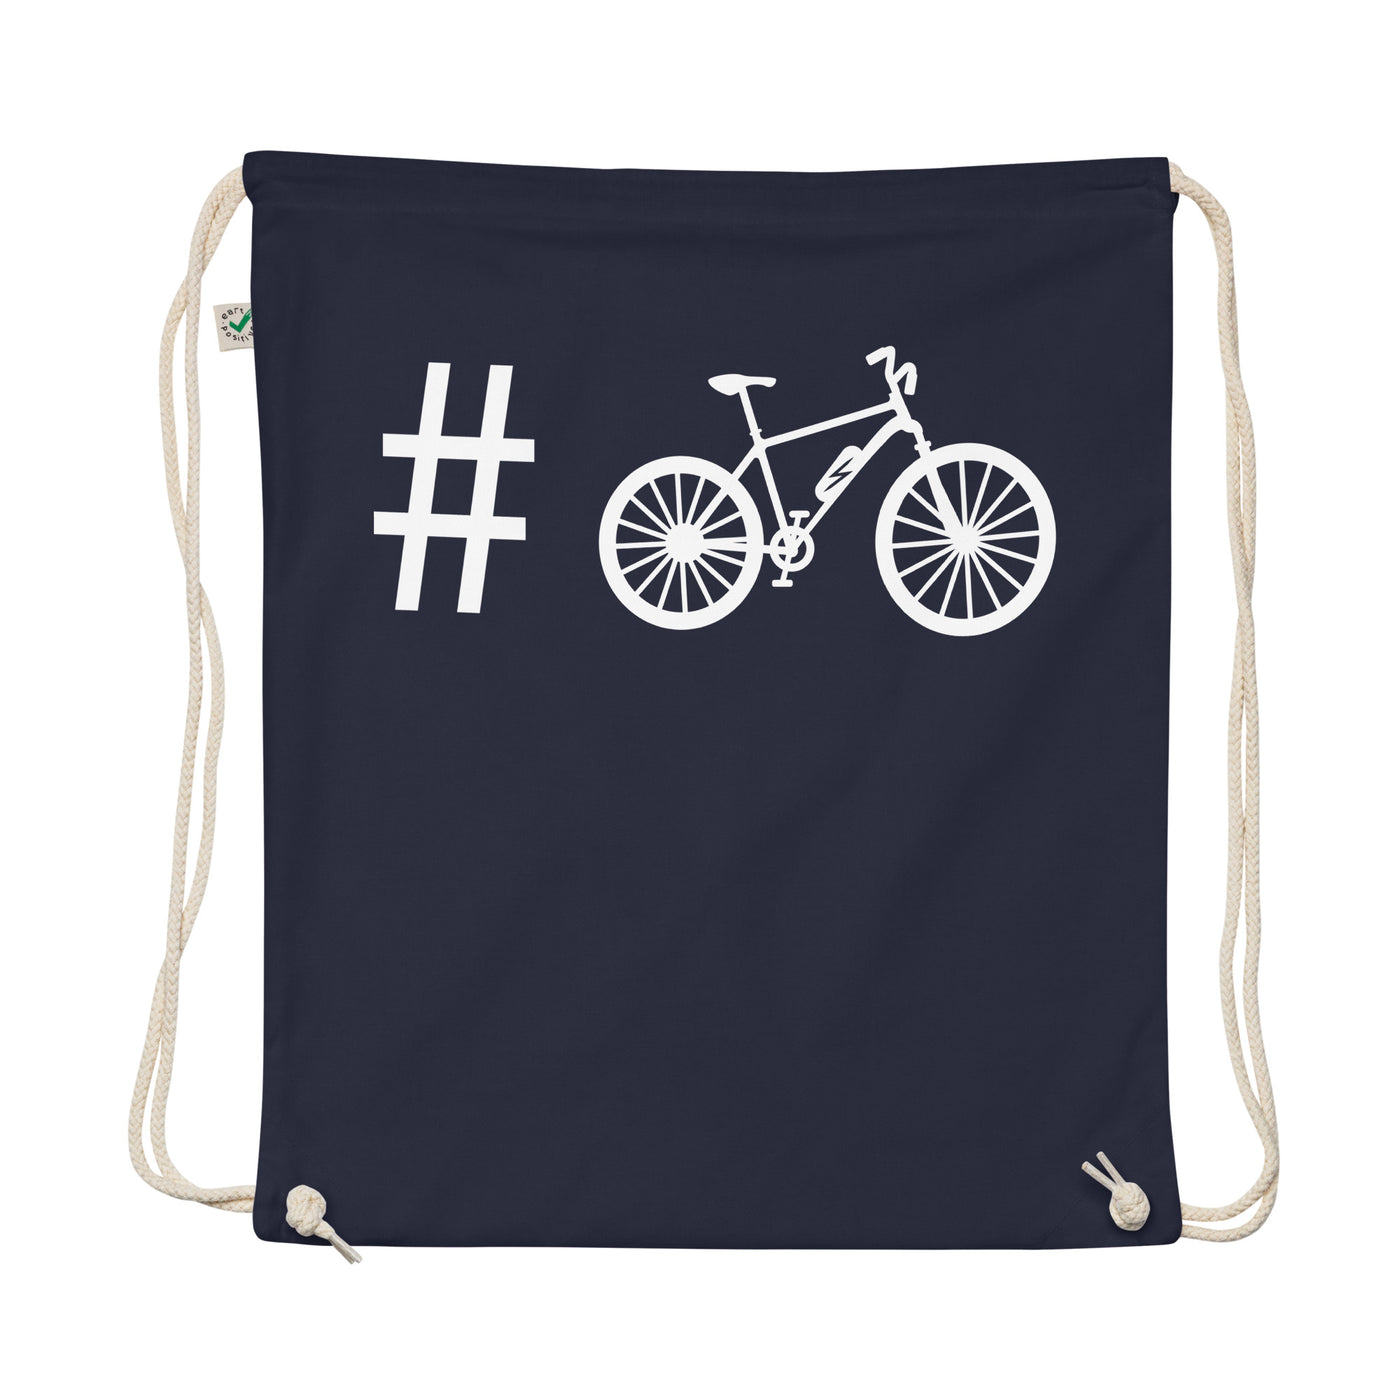 Hashtag - E-Bike - Organic Turnbeutel e-bike